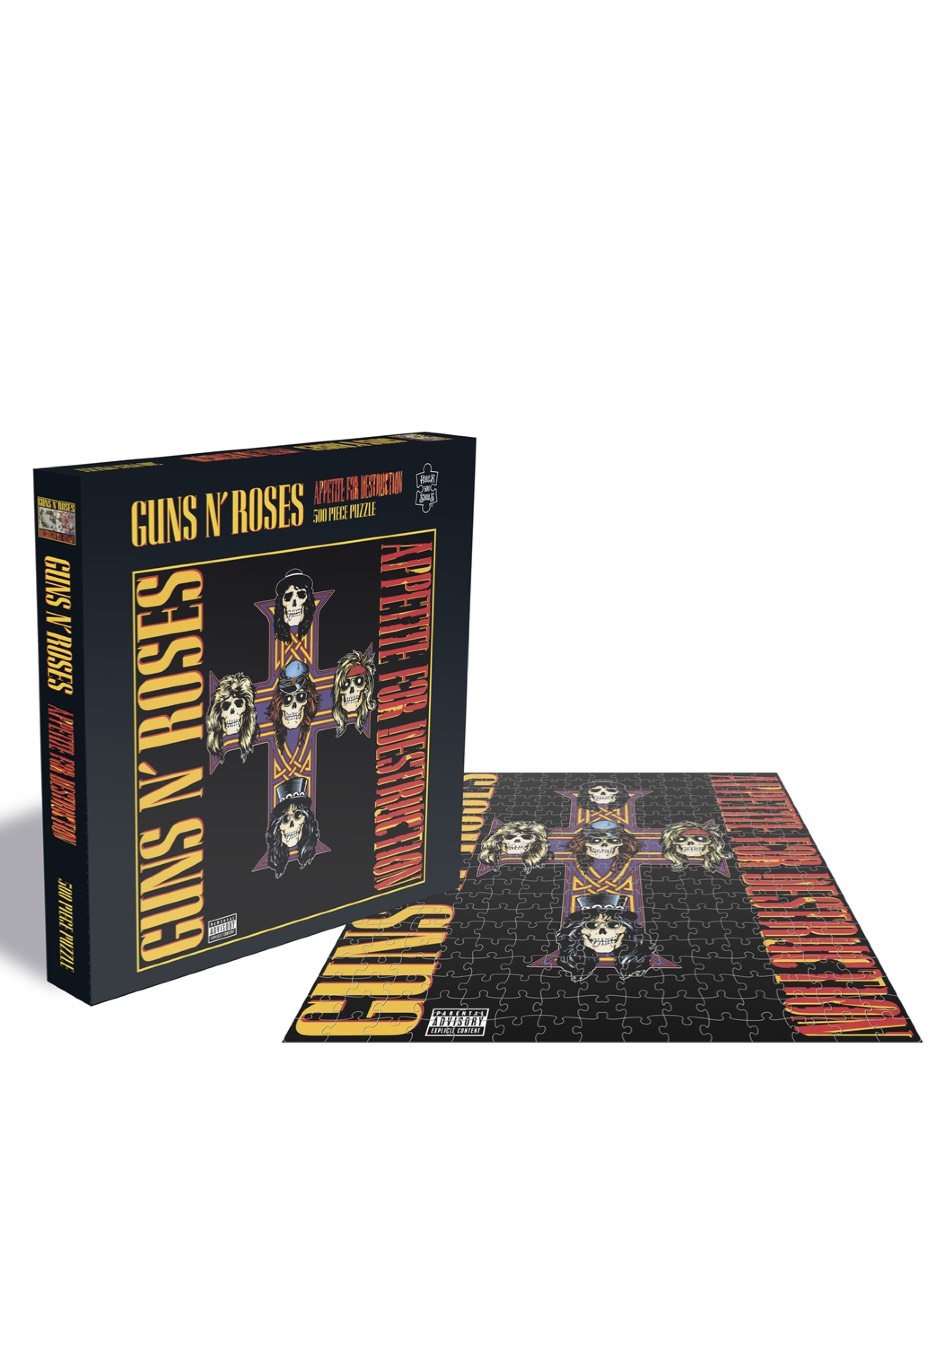 Guns N' Roses - Appetite For Destruction 2 -